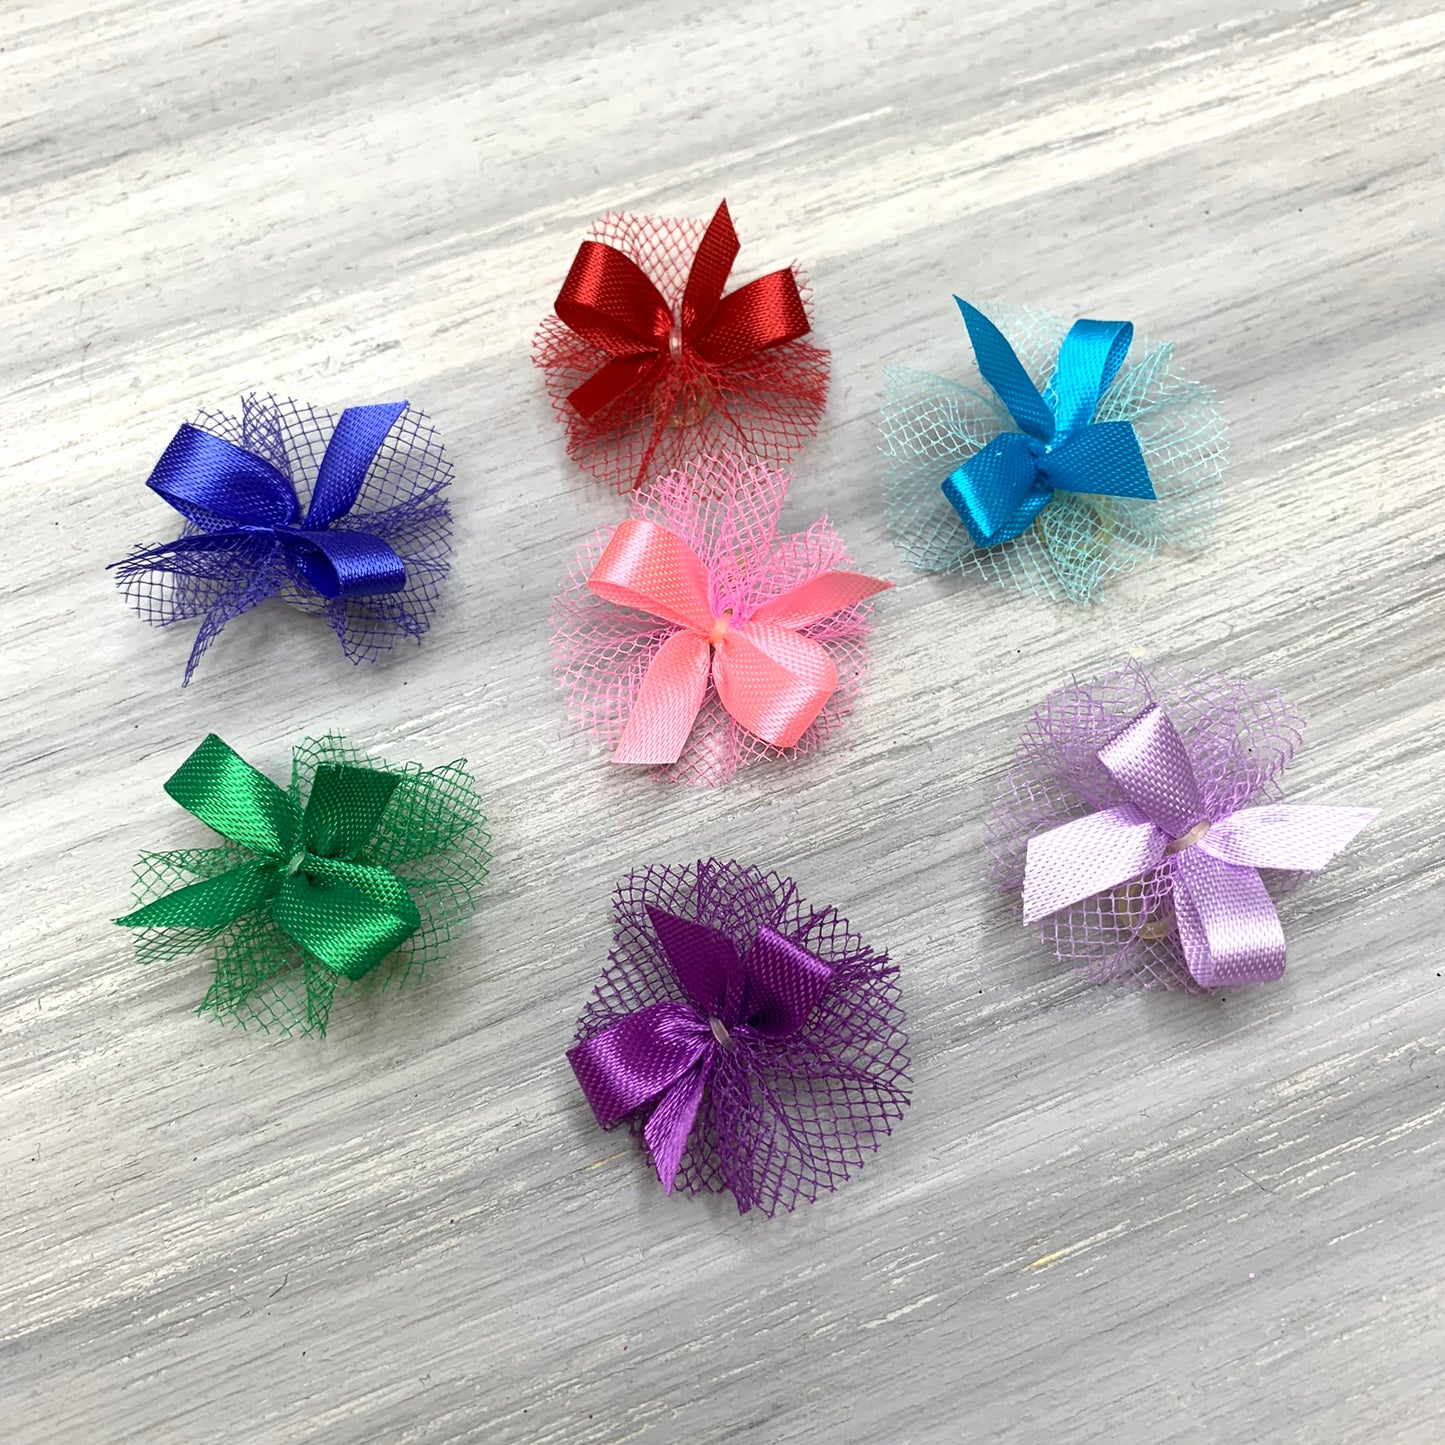 Basic - Petite Size Bows - 14 Colors - 50 Tiny Bows